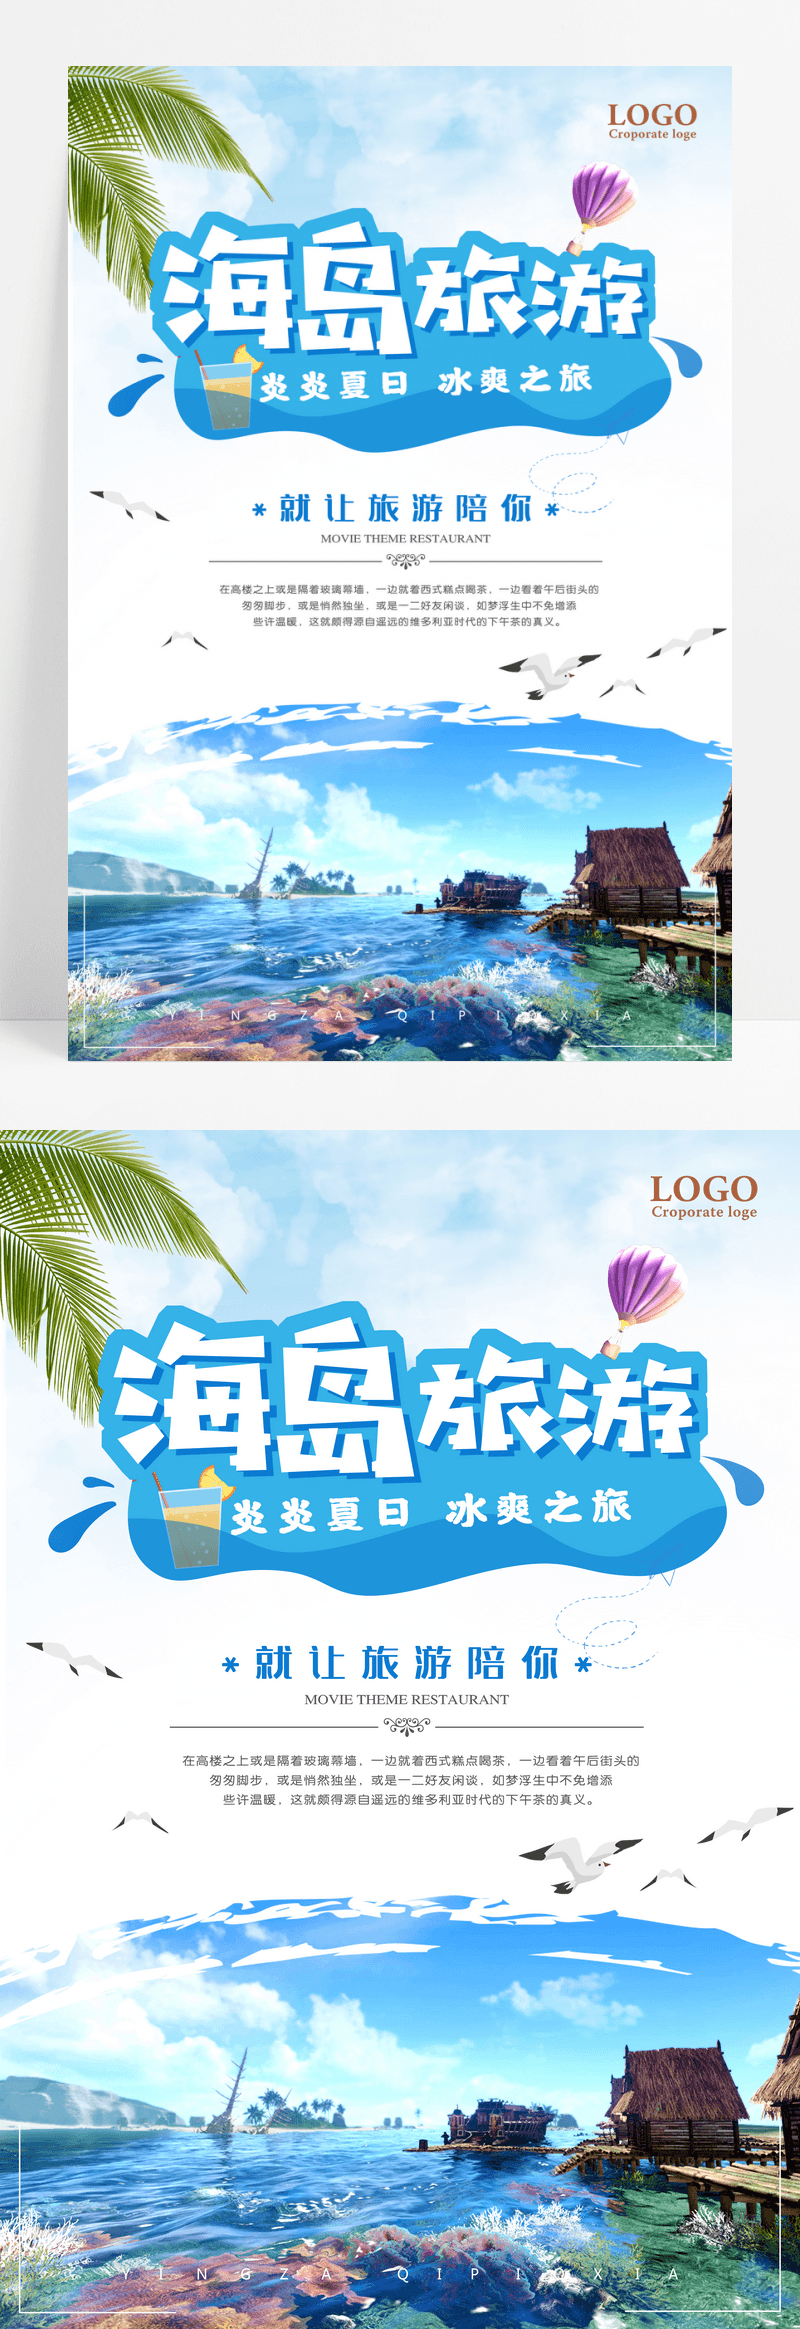 蓝色海岛旅游宣传海报设计